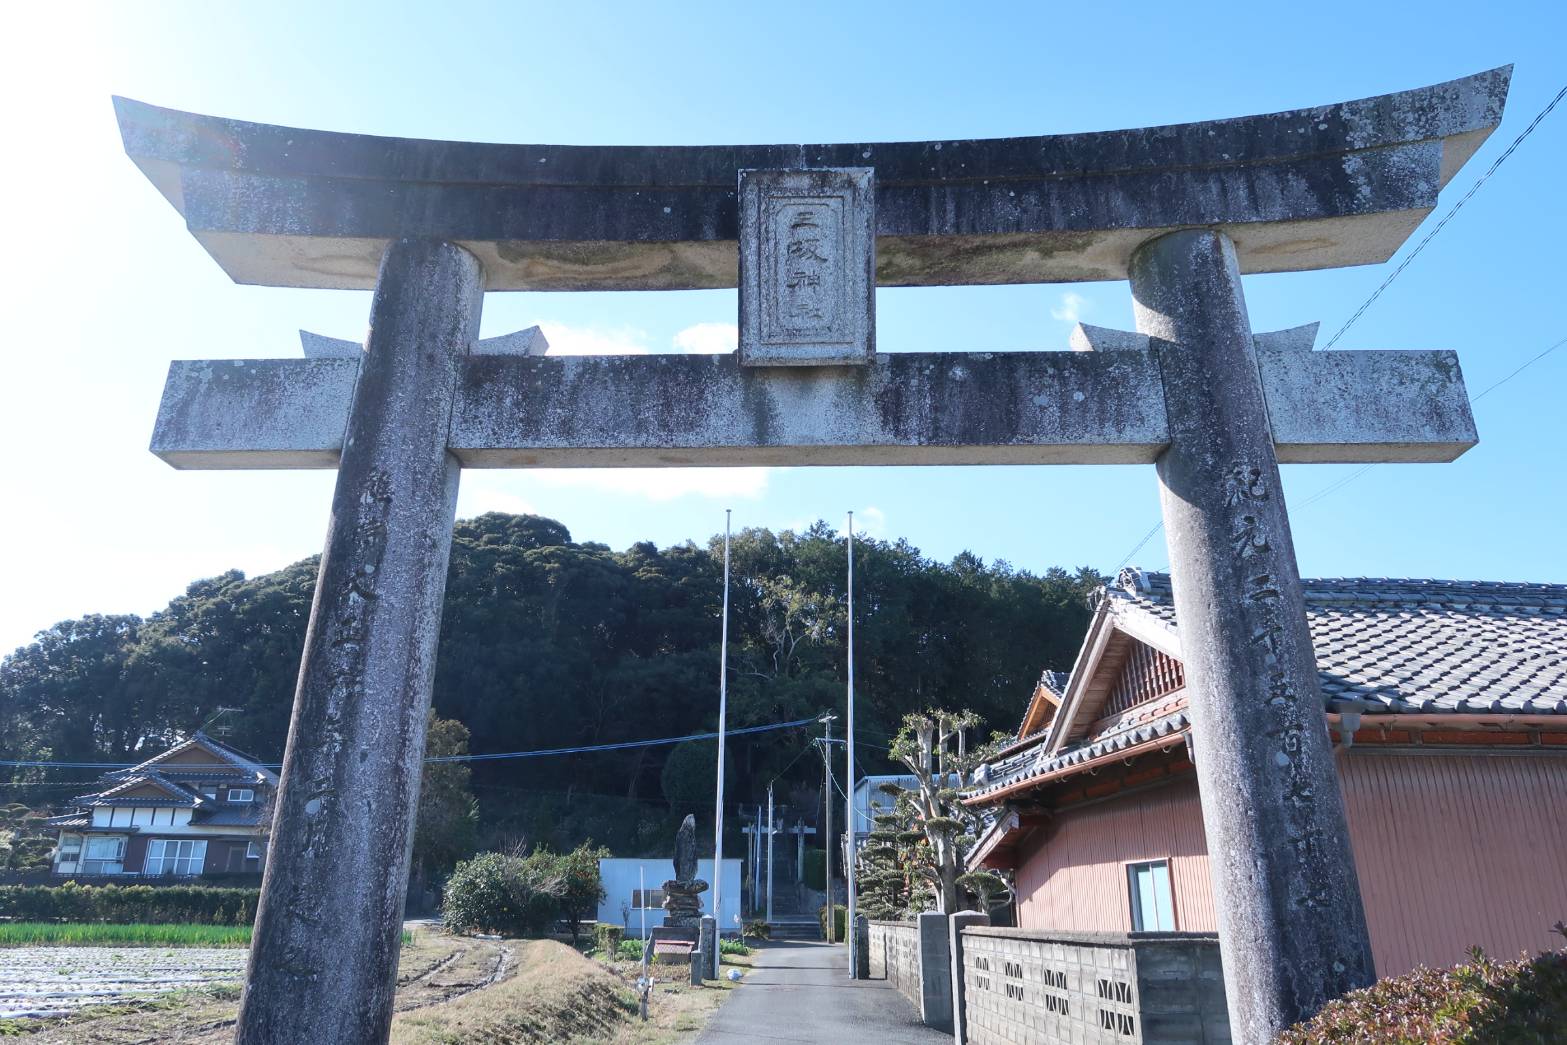 【糸島・三坂】街の喧騒を離れ、緑の中で静かな時間を楽しめる「三坂神社」